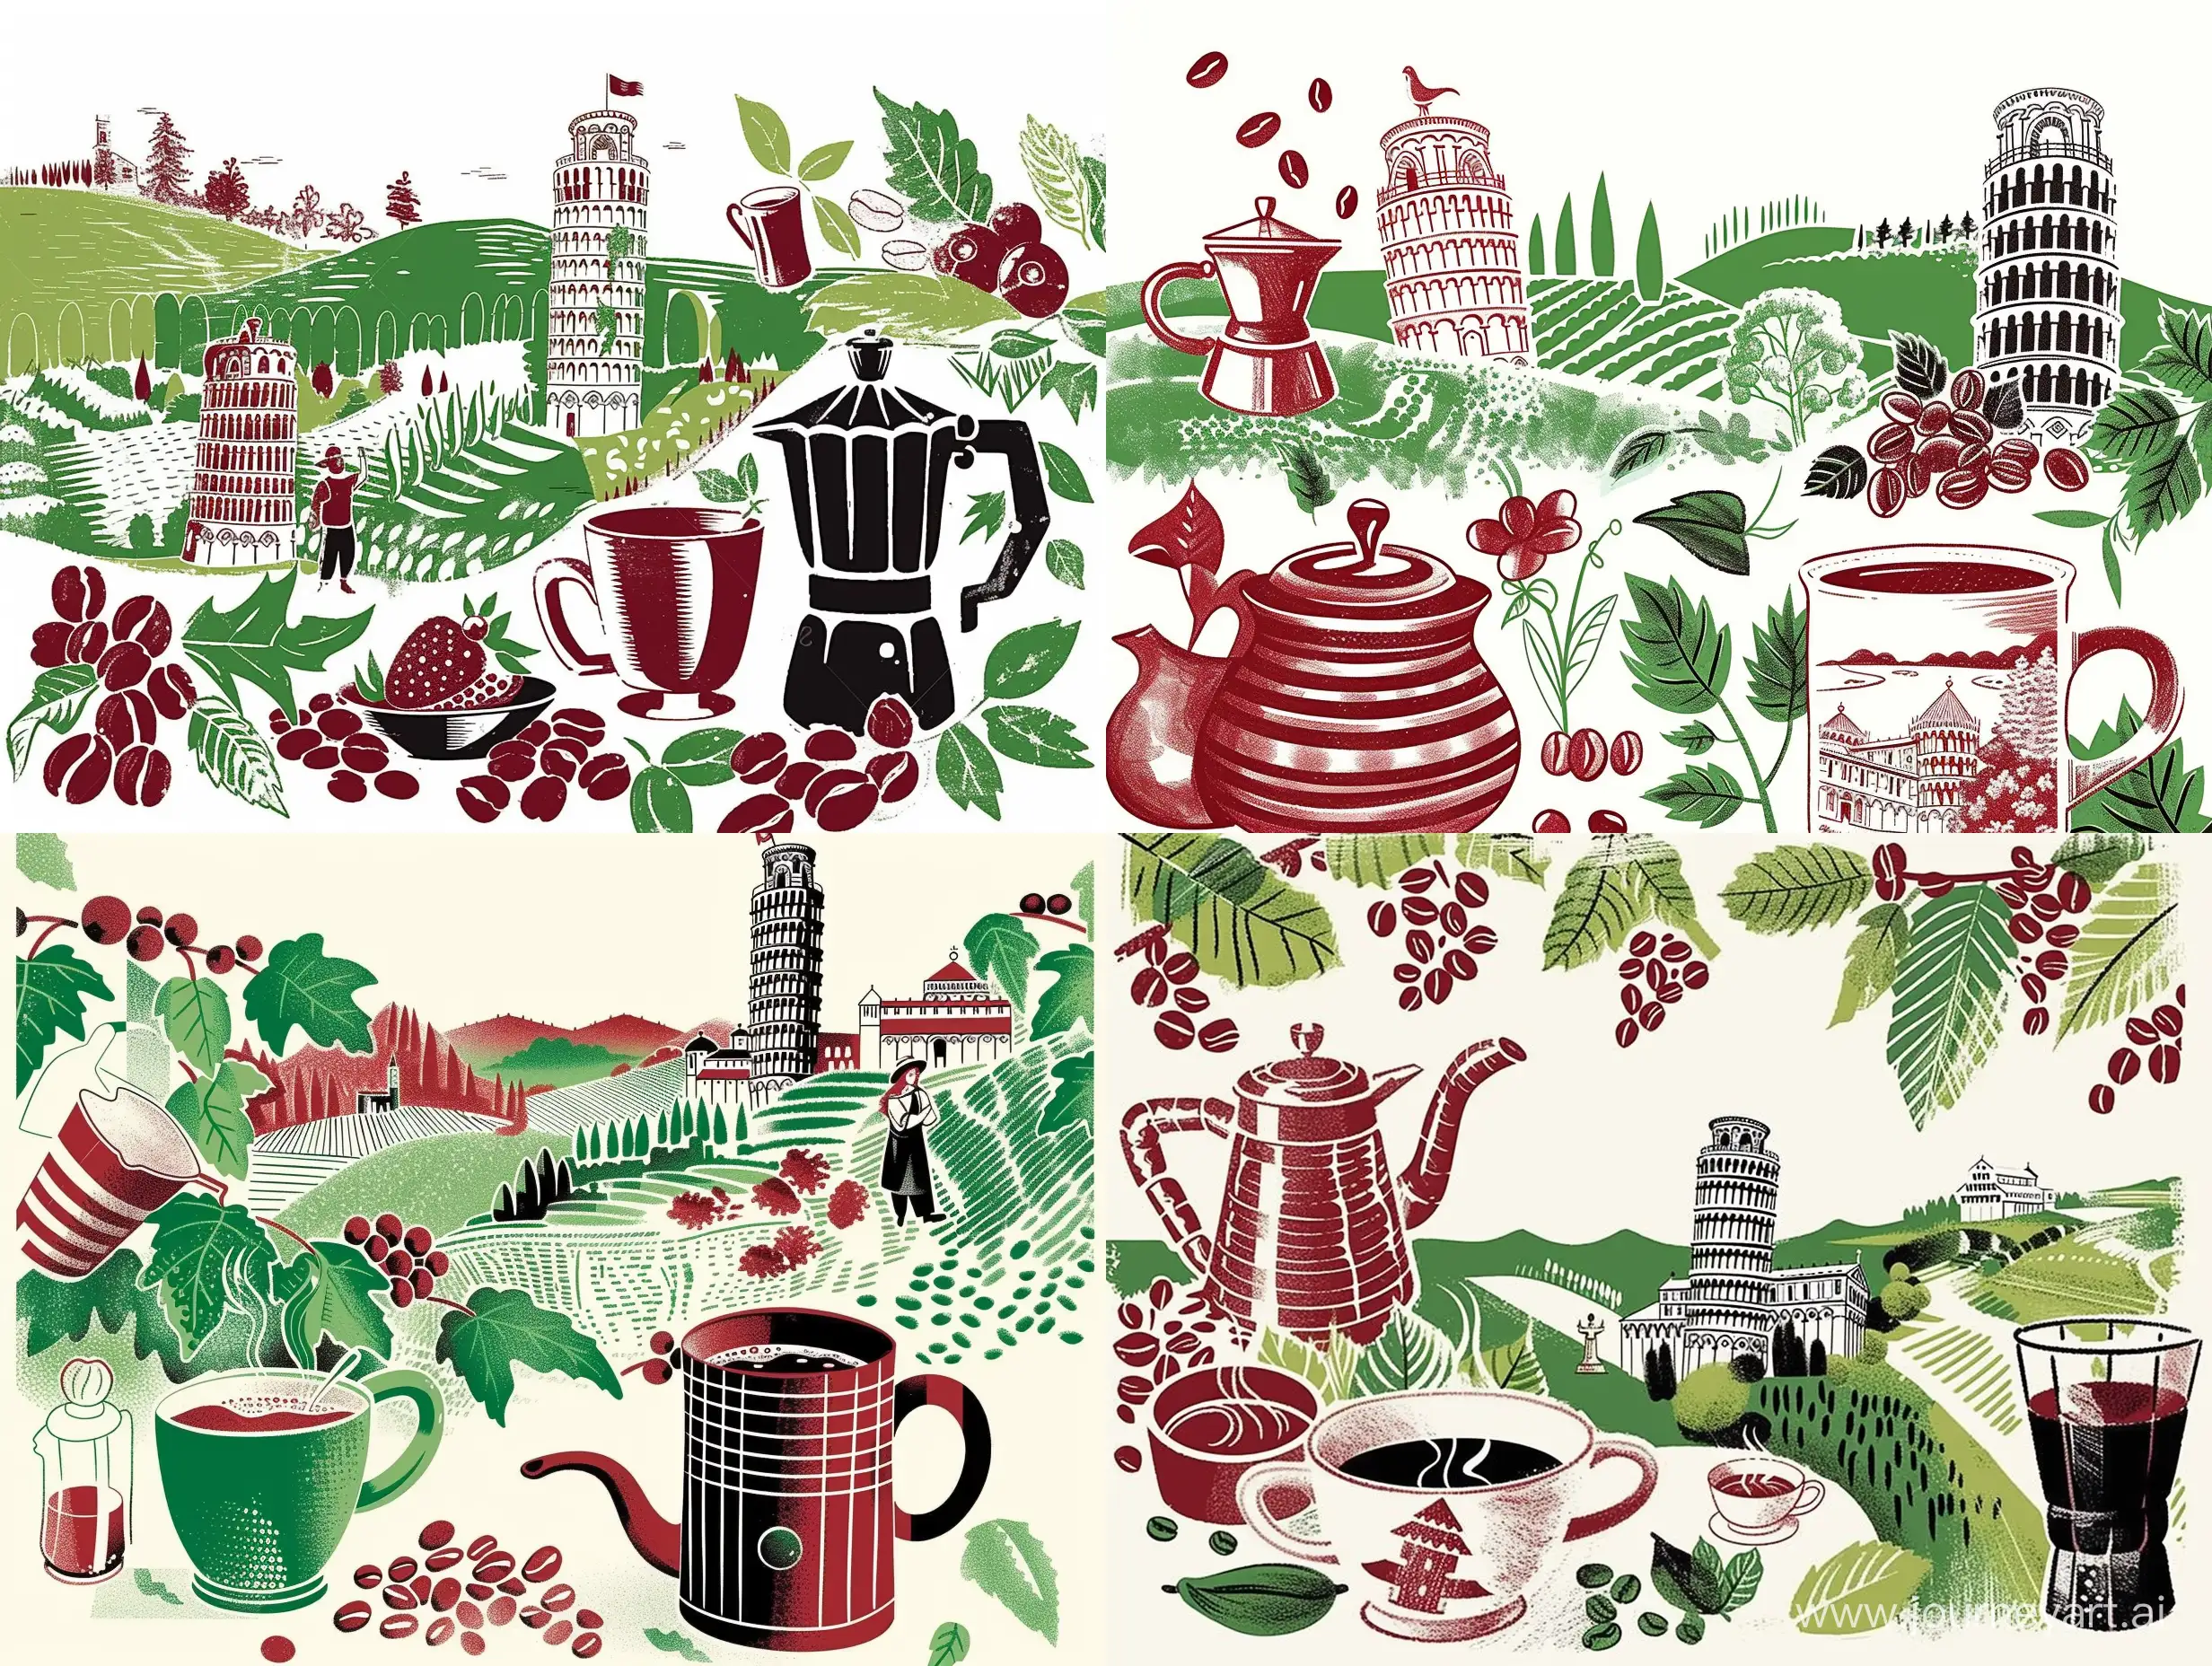 Иллюстрация в стиле авангард кофе, чашка кофе, кружка кофе, зерна кофе, символы Италии, Кофейник, чашка кофе, пизанская башня, природа Италии в красном, зеленом и белом цветах, сверху иллюстрации белое однотонное пустое поле - sref https://i.pinimg.com/564x/6b/94/d1/6b94d172e0e340504c4207171d194e1f.jpg